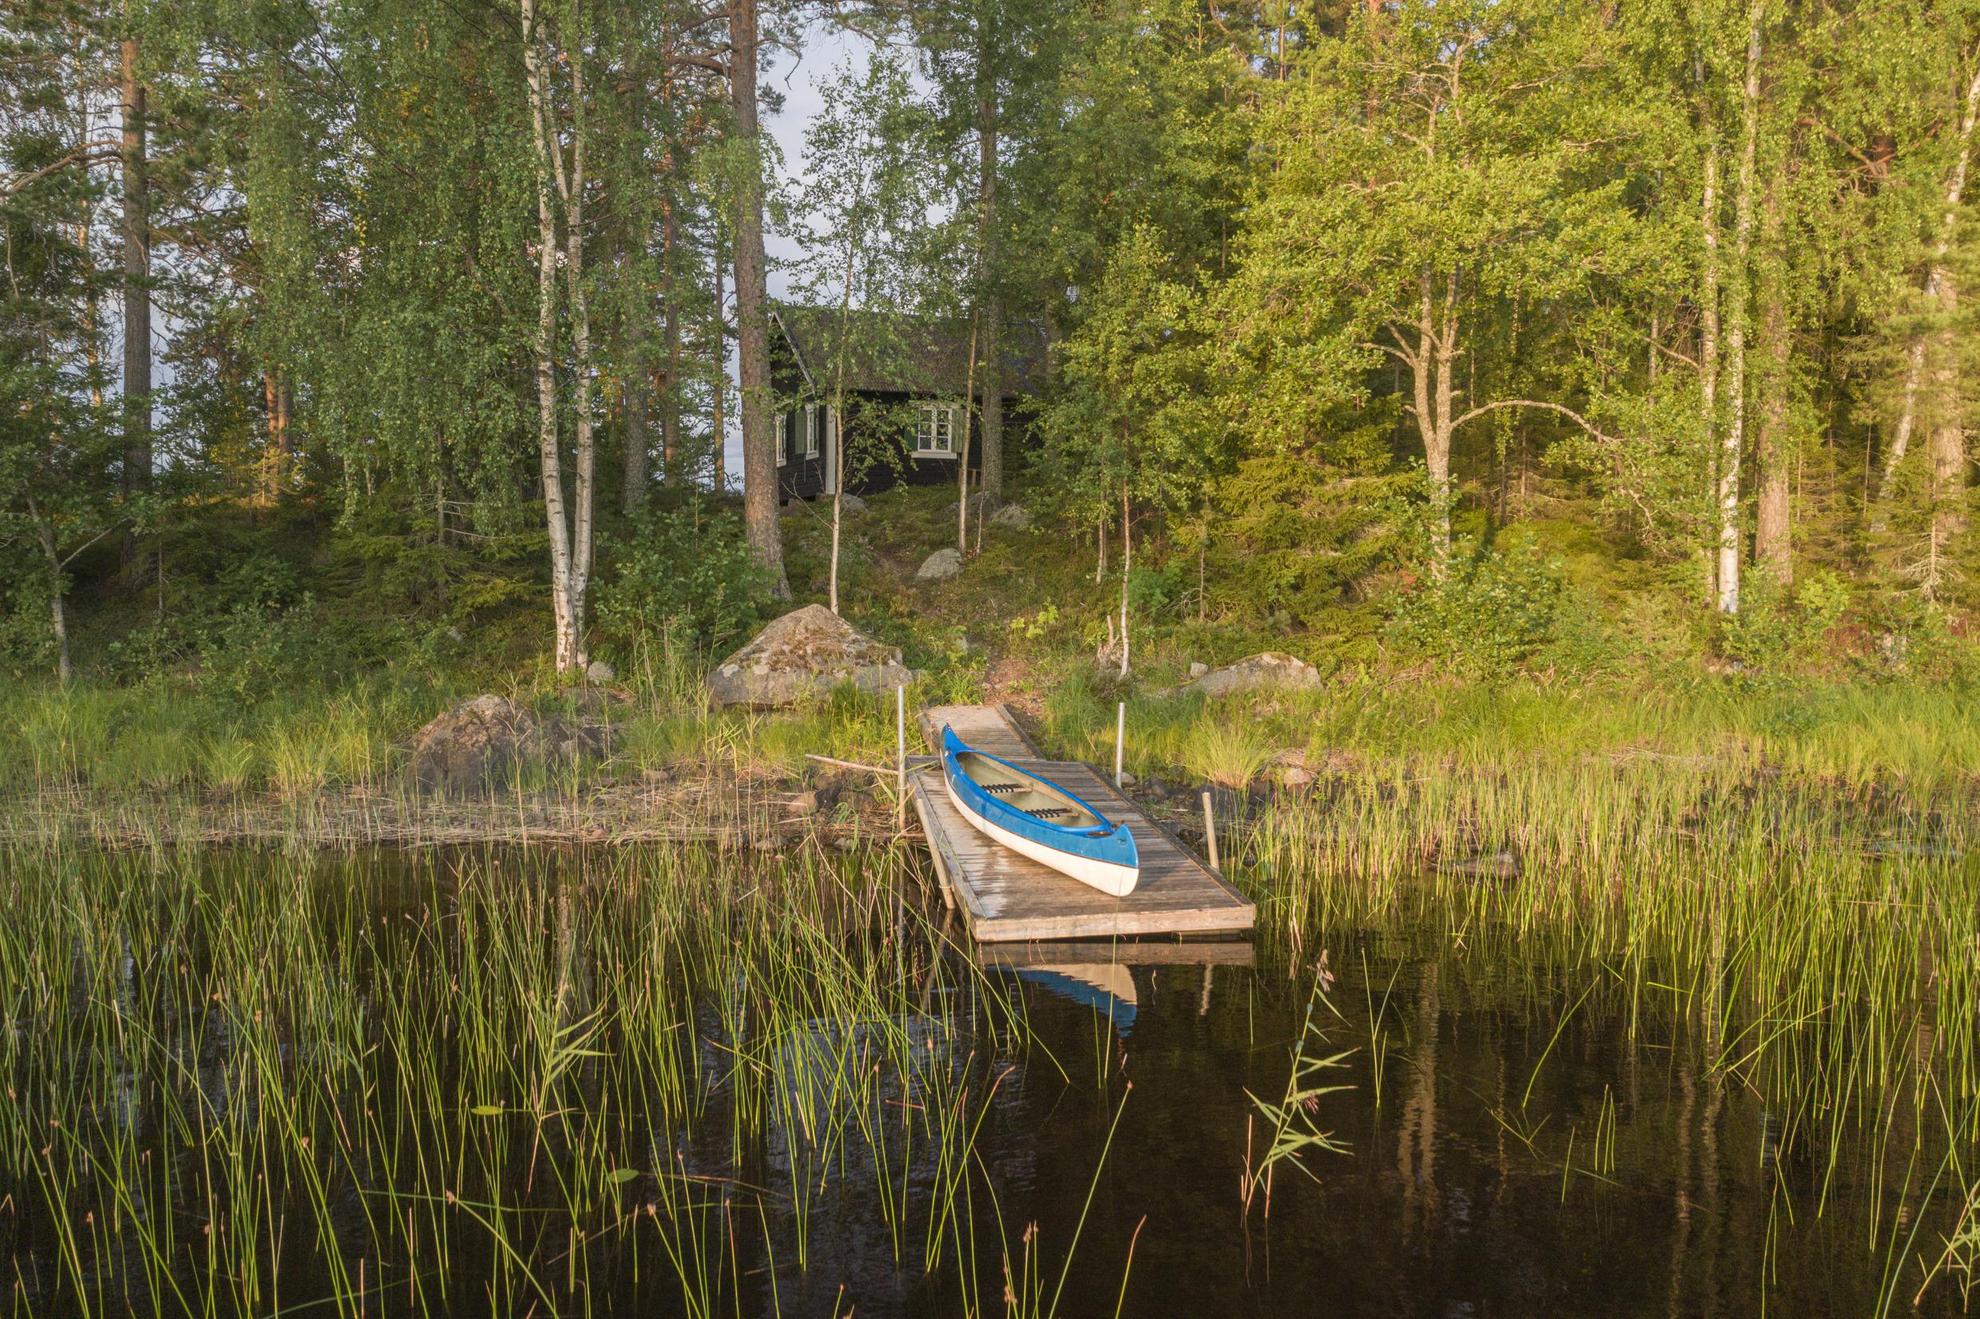 Een kano op een kleine steiger in het riet van een ondiep meer, waar je een houten hut kunt zien verborgen in het bos erachter.